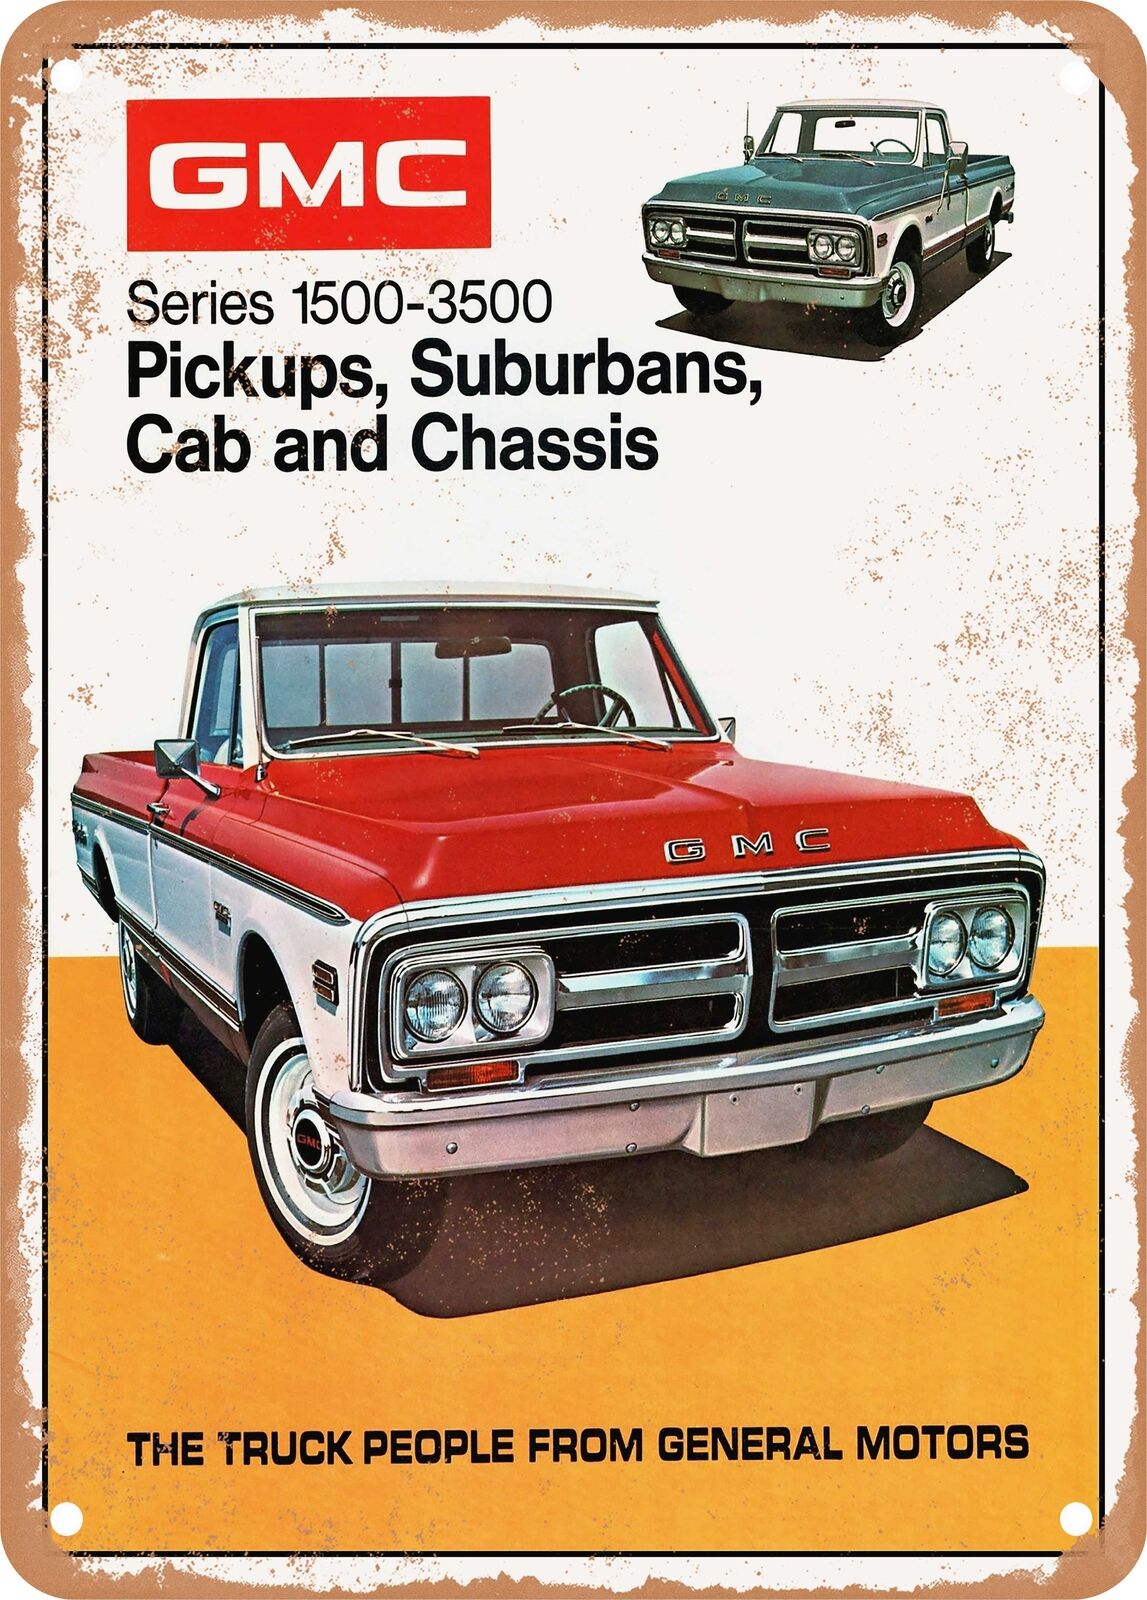 METAL SIGN - 1972 GMC Pickup Models Vintage Ad